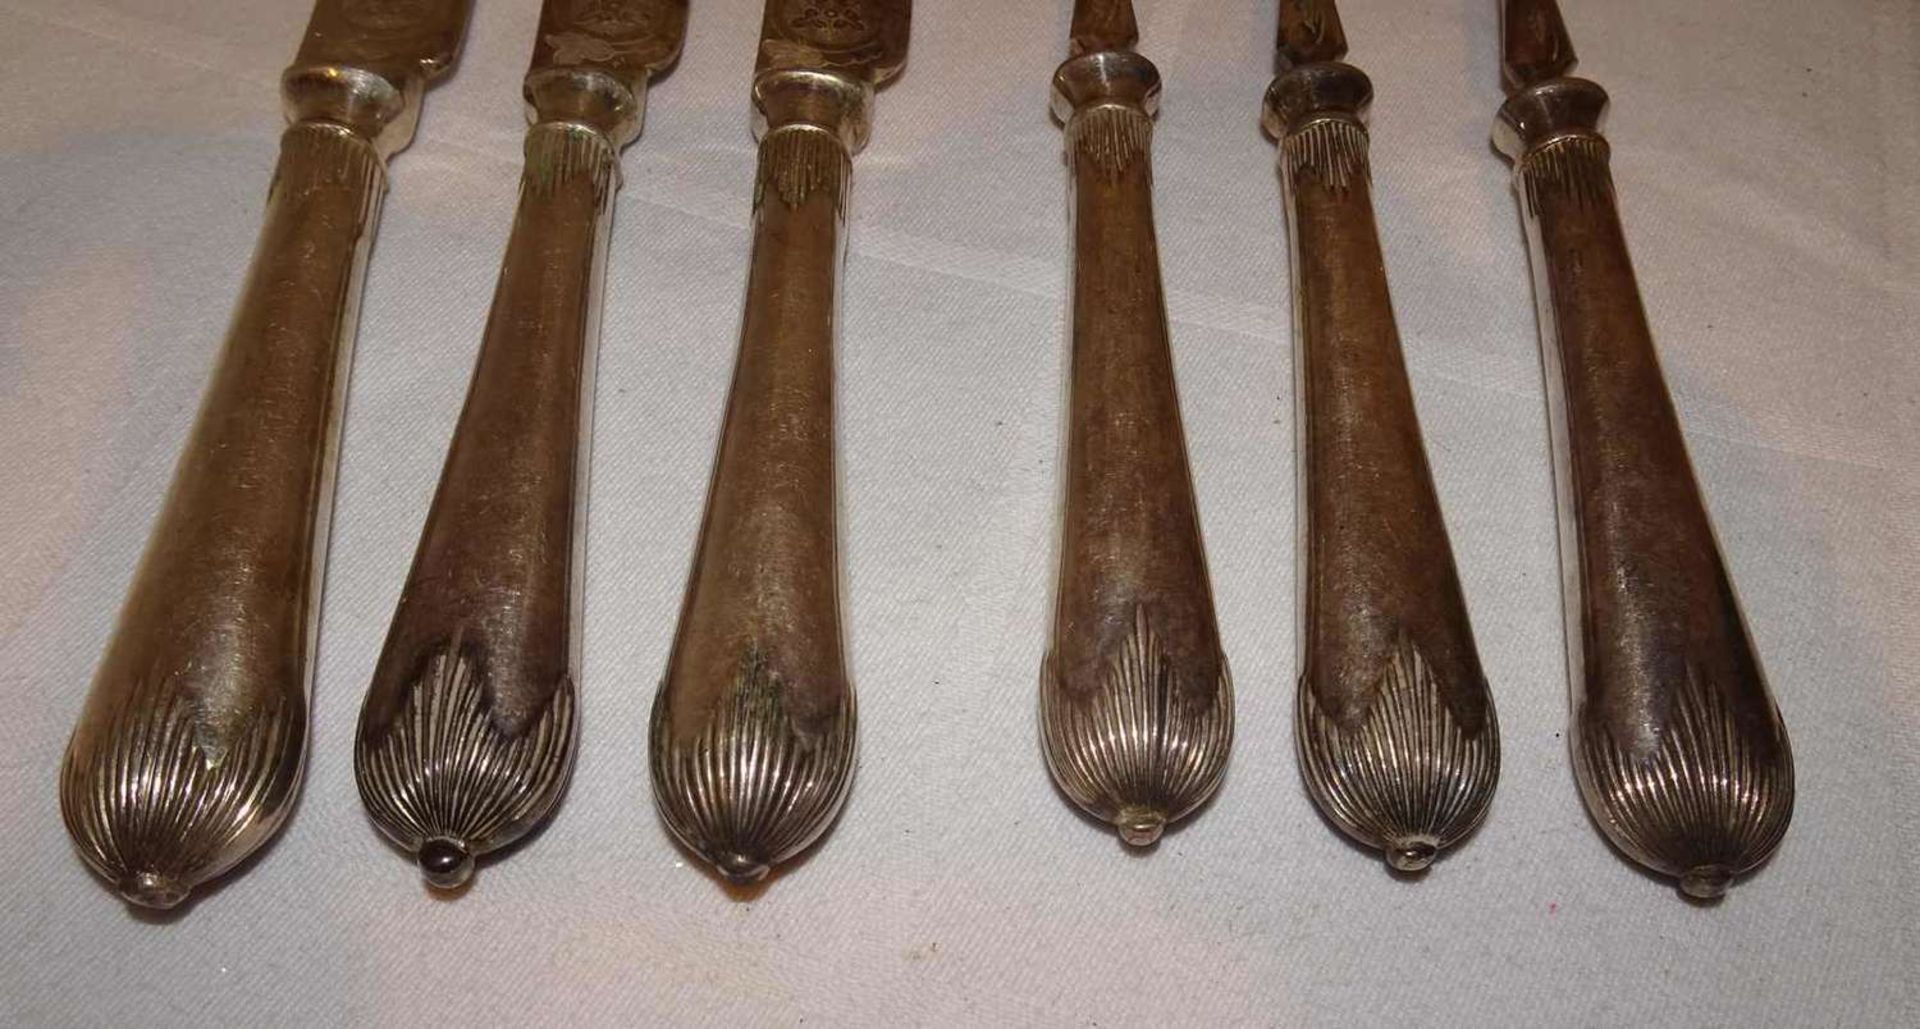 Elkington Jugendstil Besteckteile, feine Zisielierung, bestehend aus 3 Messer und 3 Gabeln.Elkingto - Bild 2 aus 2